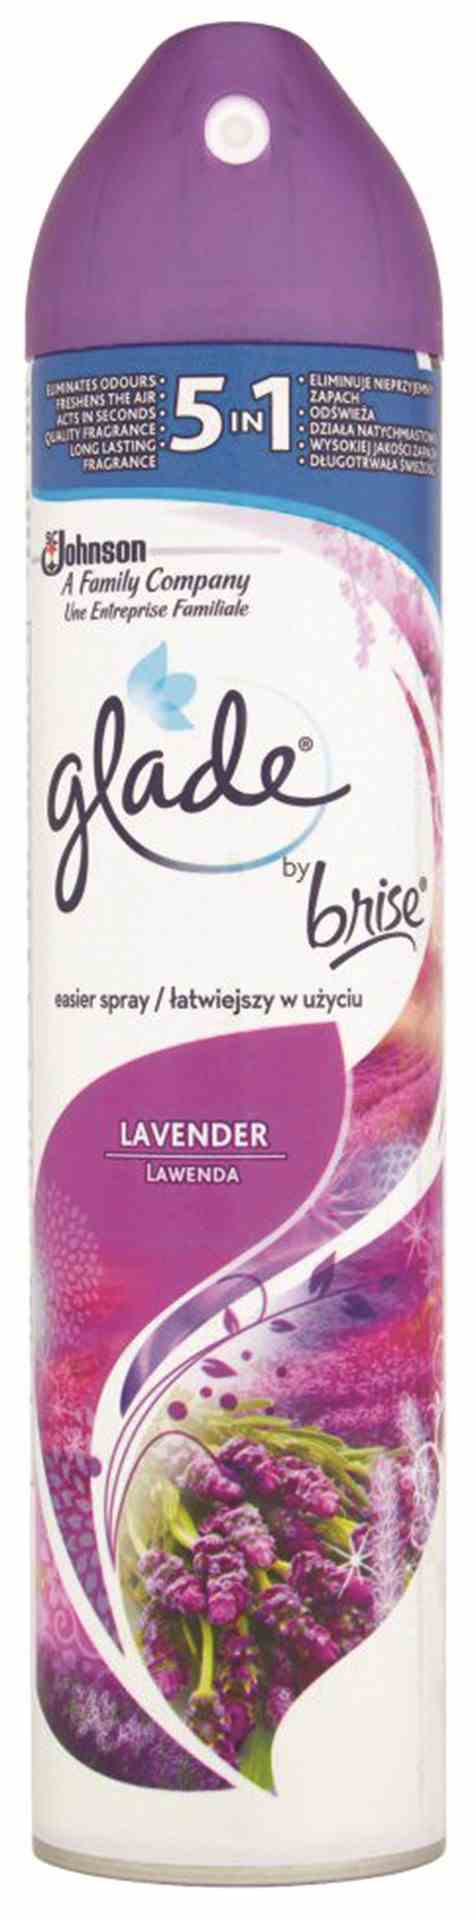 Odświeżacz powietrza GLADE/BRISE Lawenda, spray, 300ml